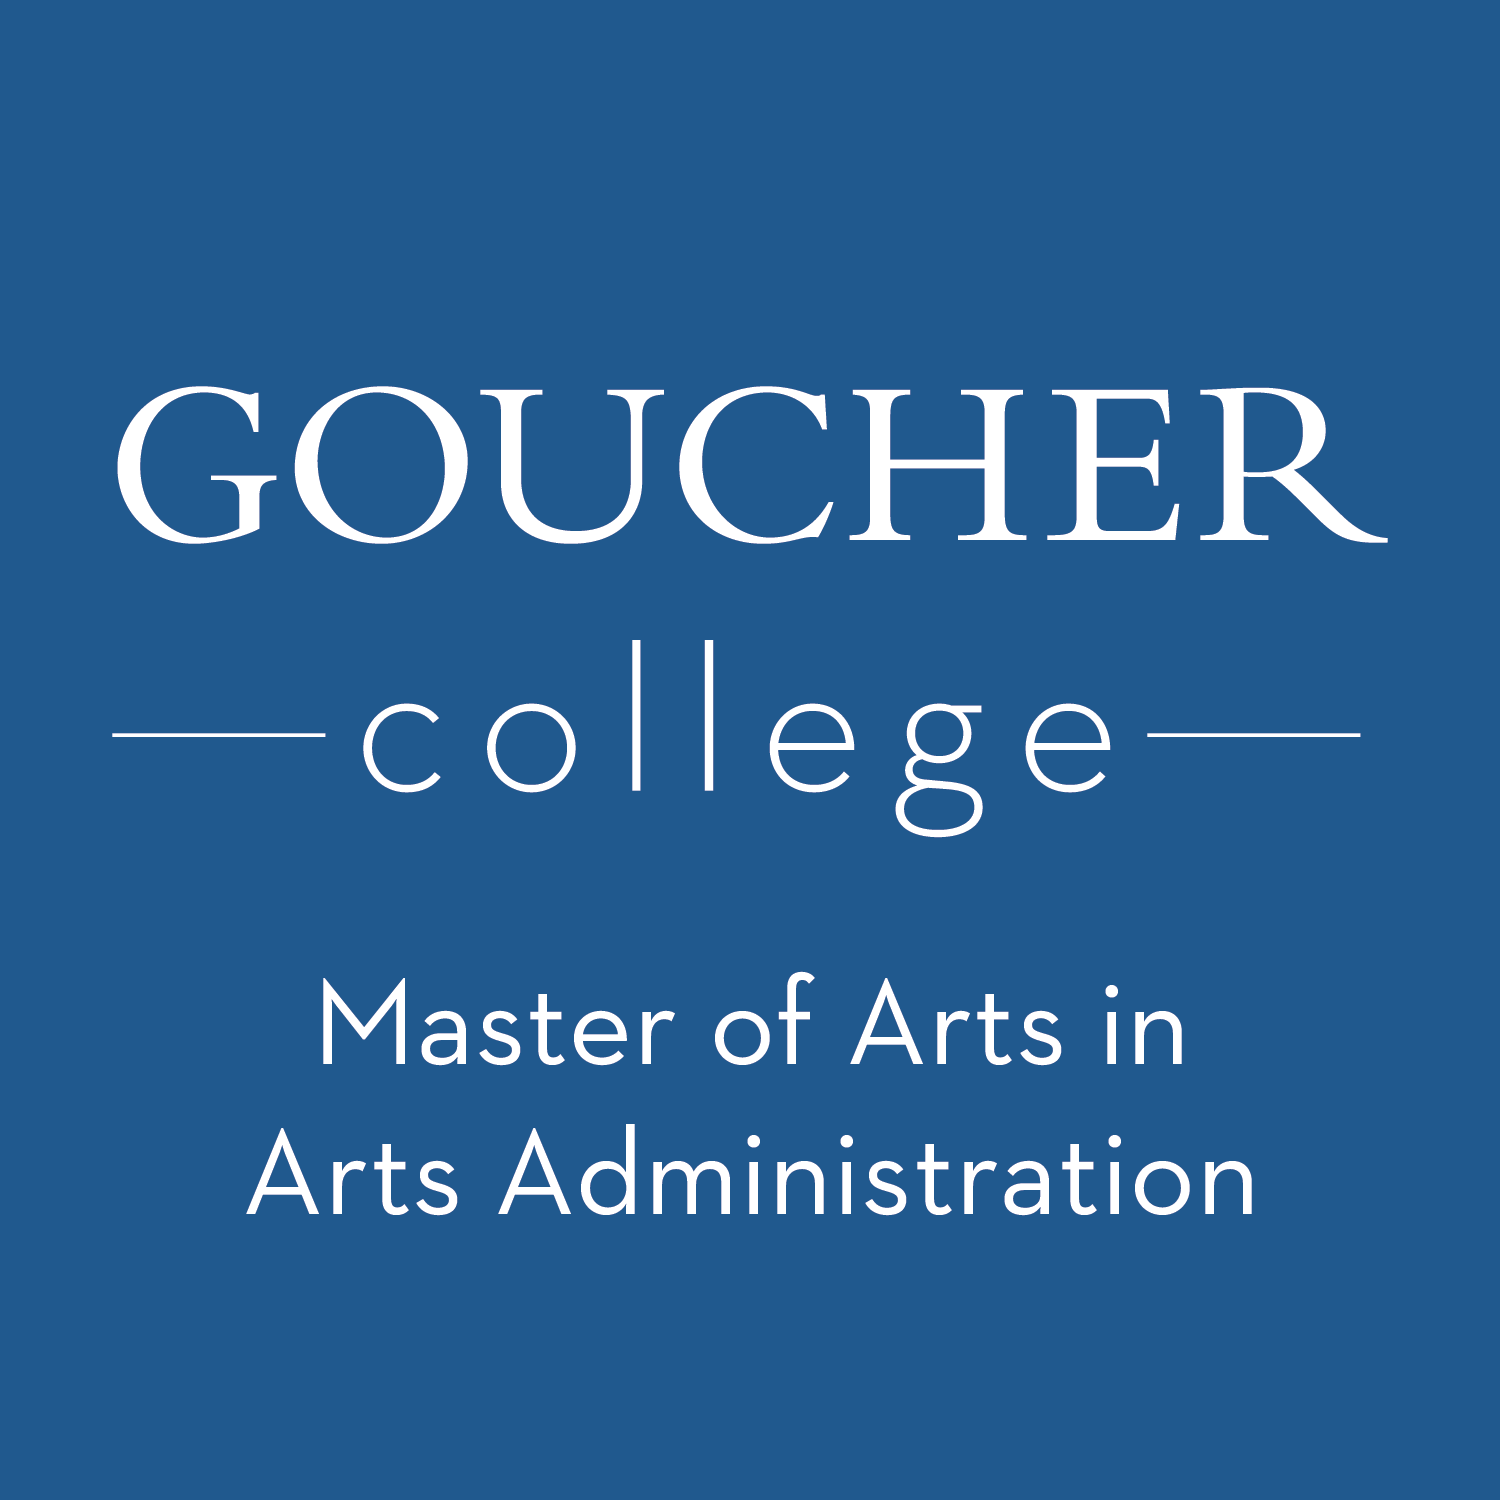 Goucher College Logo